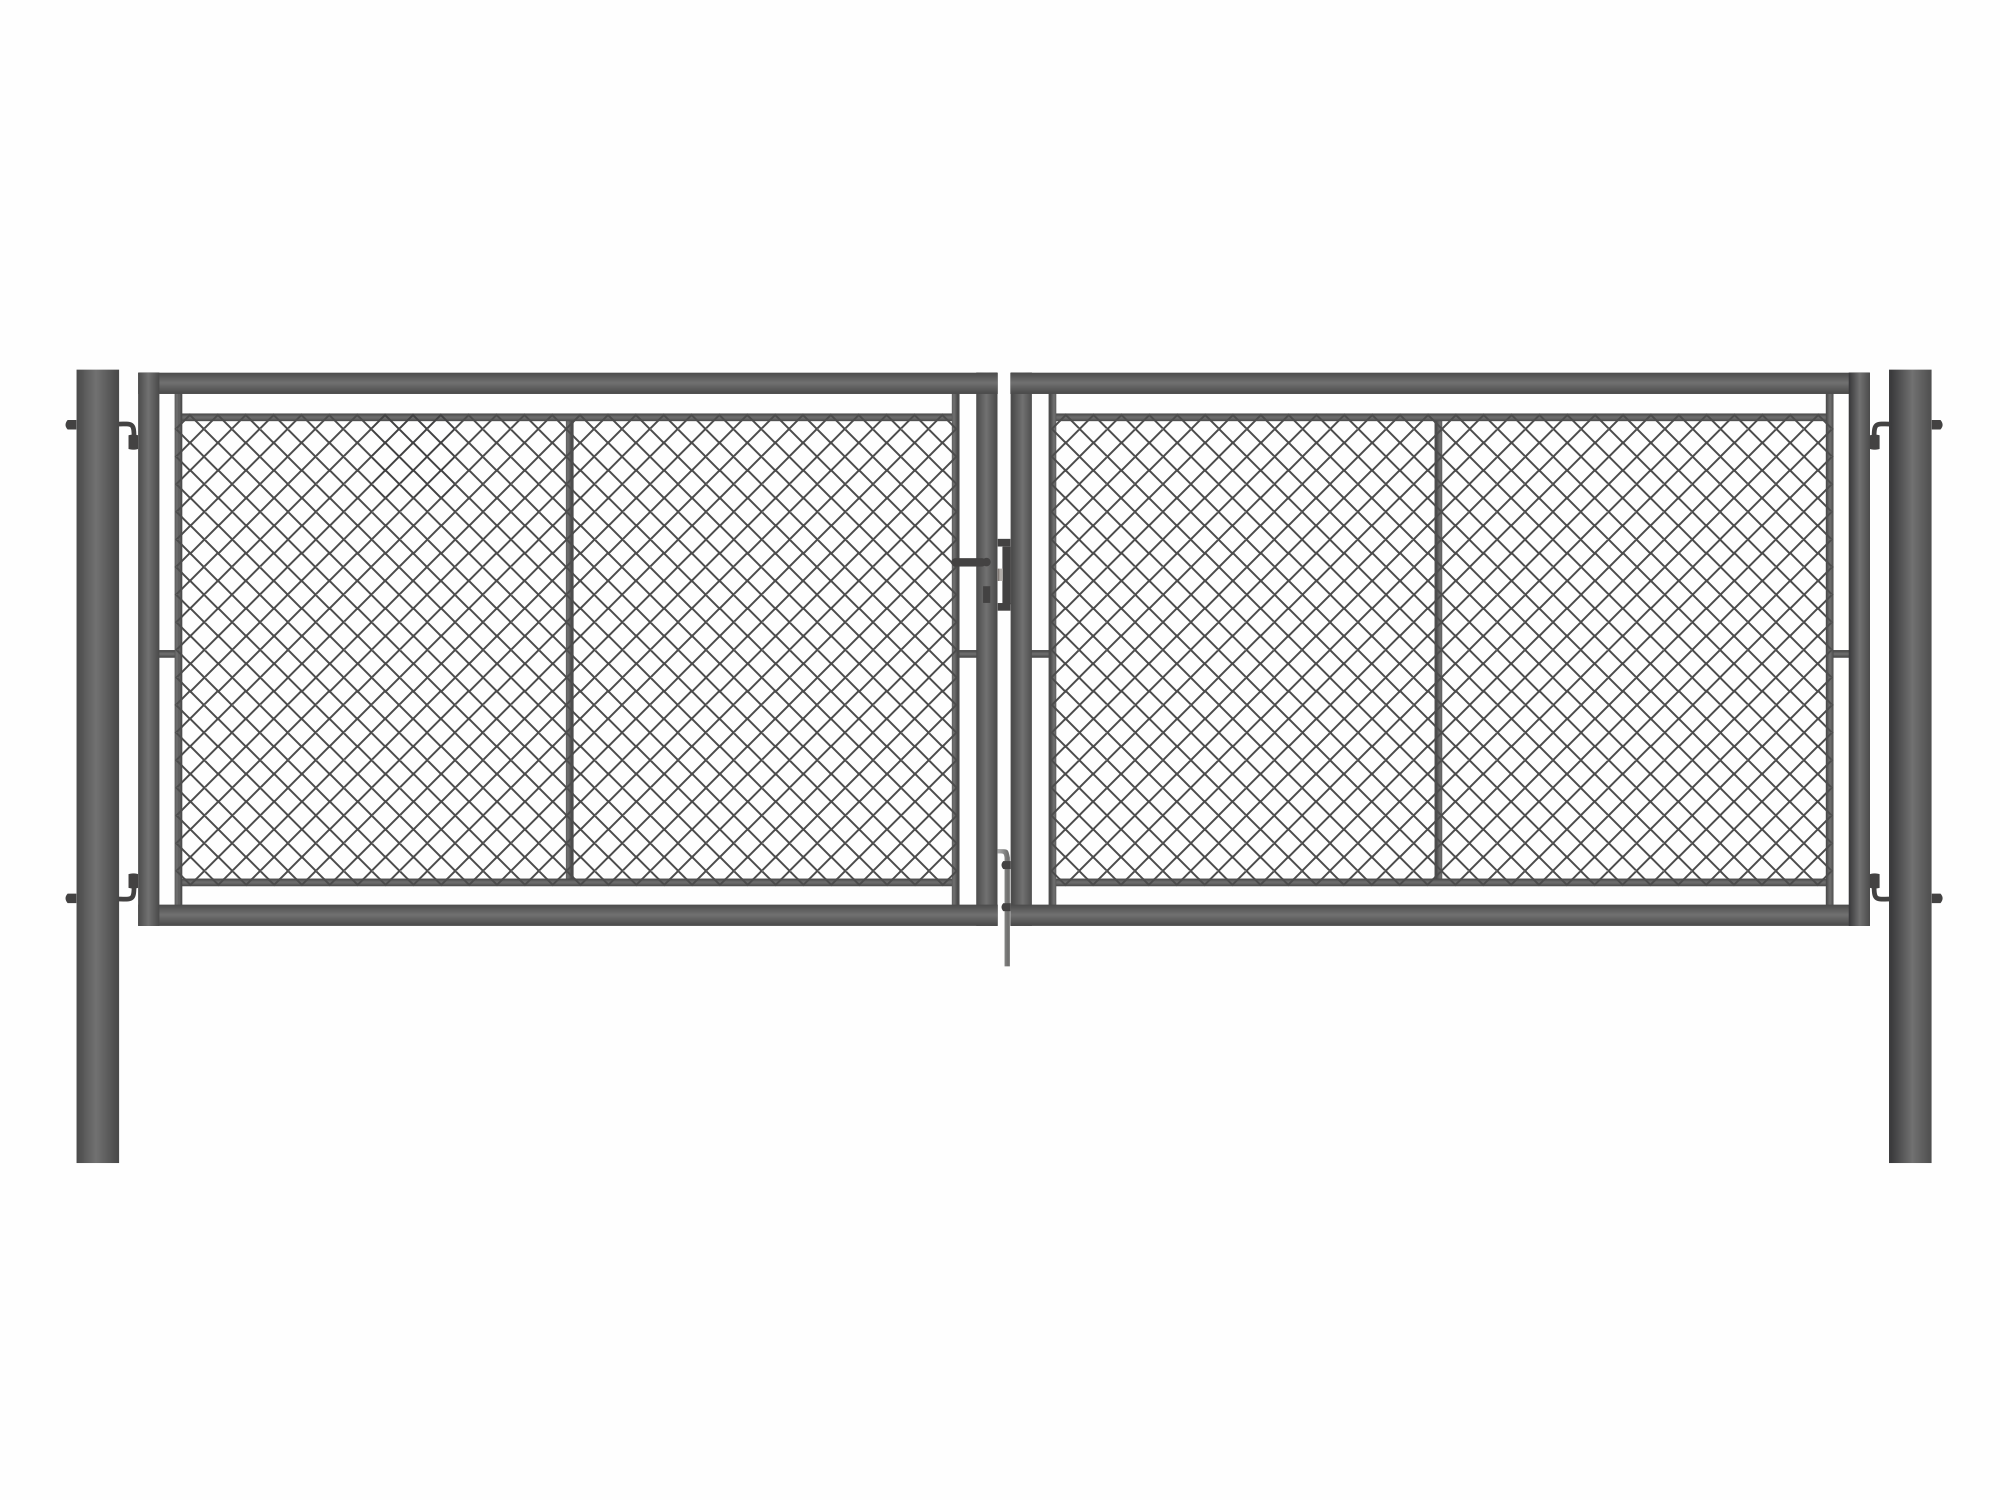 Brána zahradní dvoukřídlá antracit, výška 195 x 500 cm, FAB, s výplní klasického pletiva